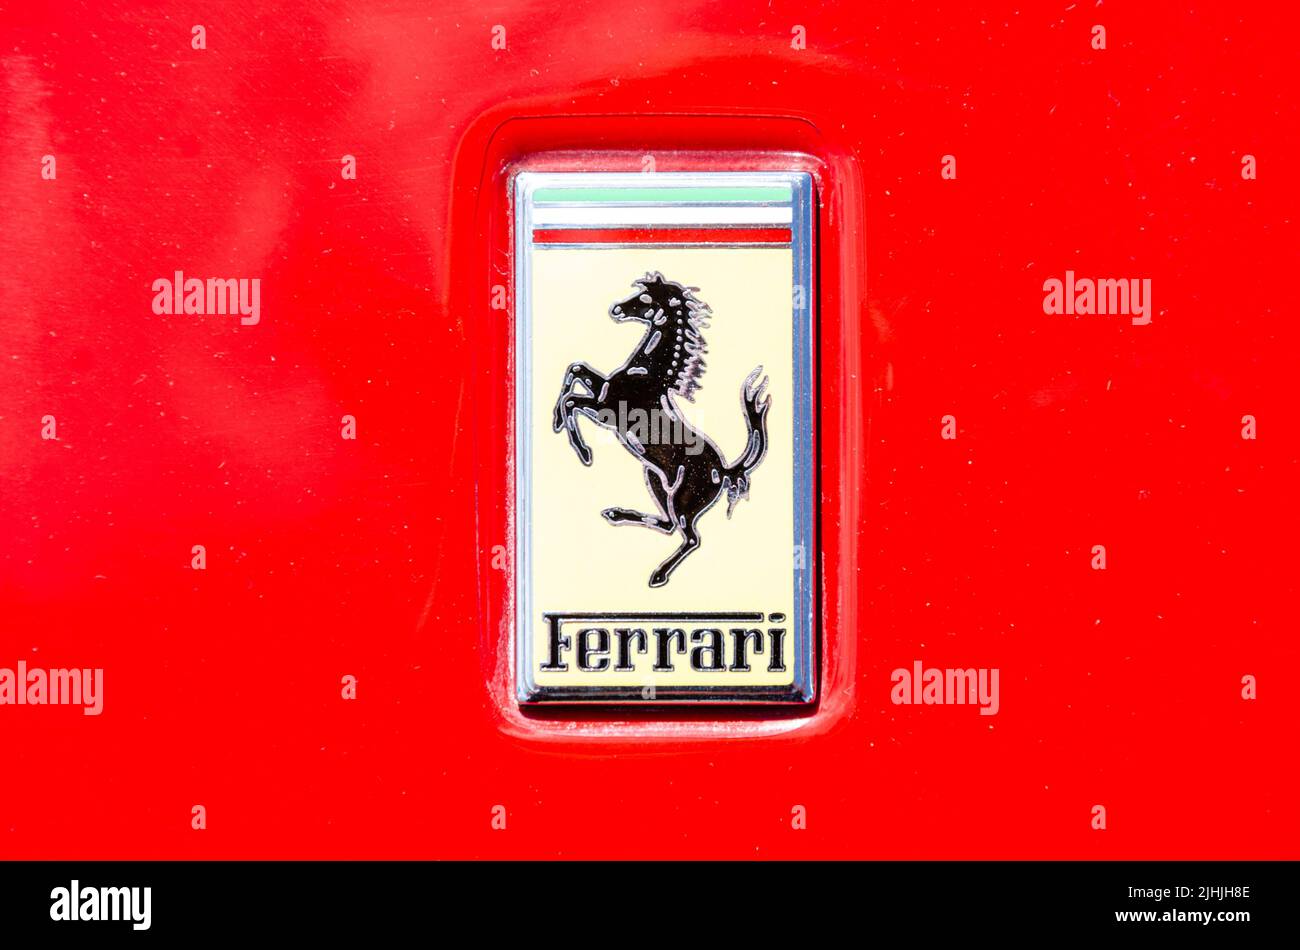 Primer plano de una insignia de Ferrari en un Ferrari rojo Foto de stock